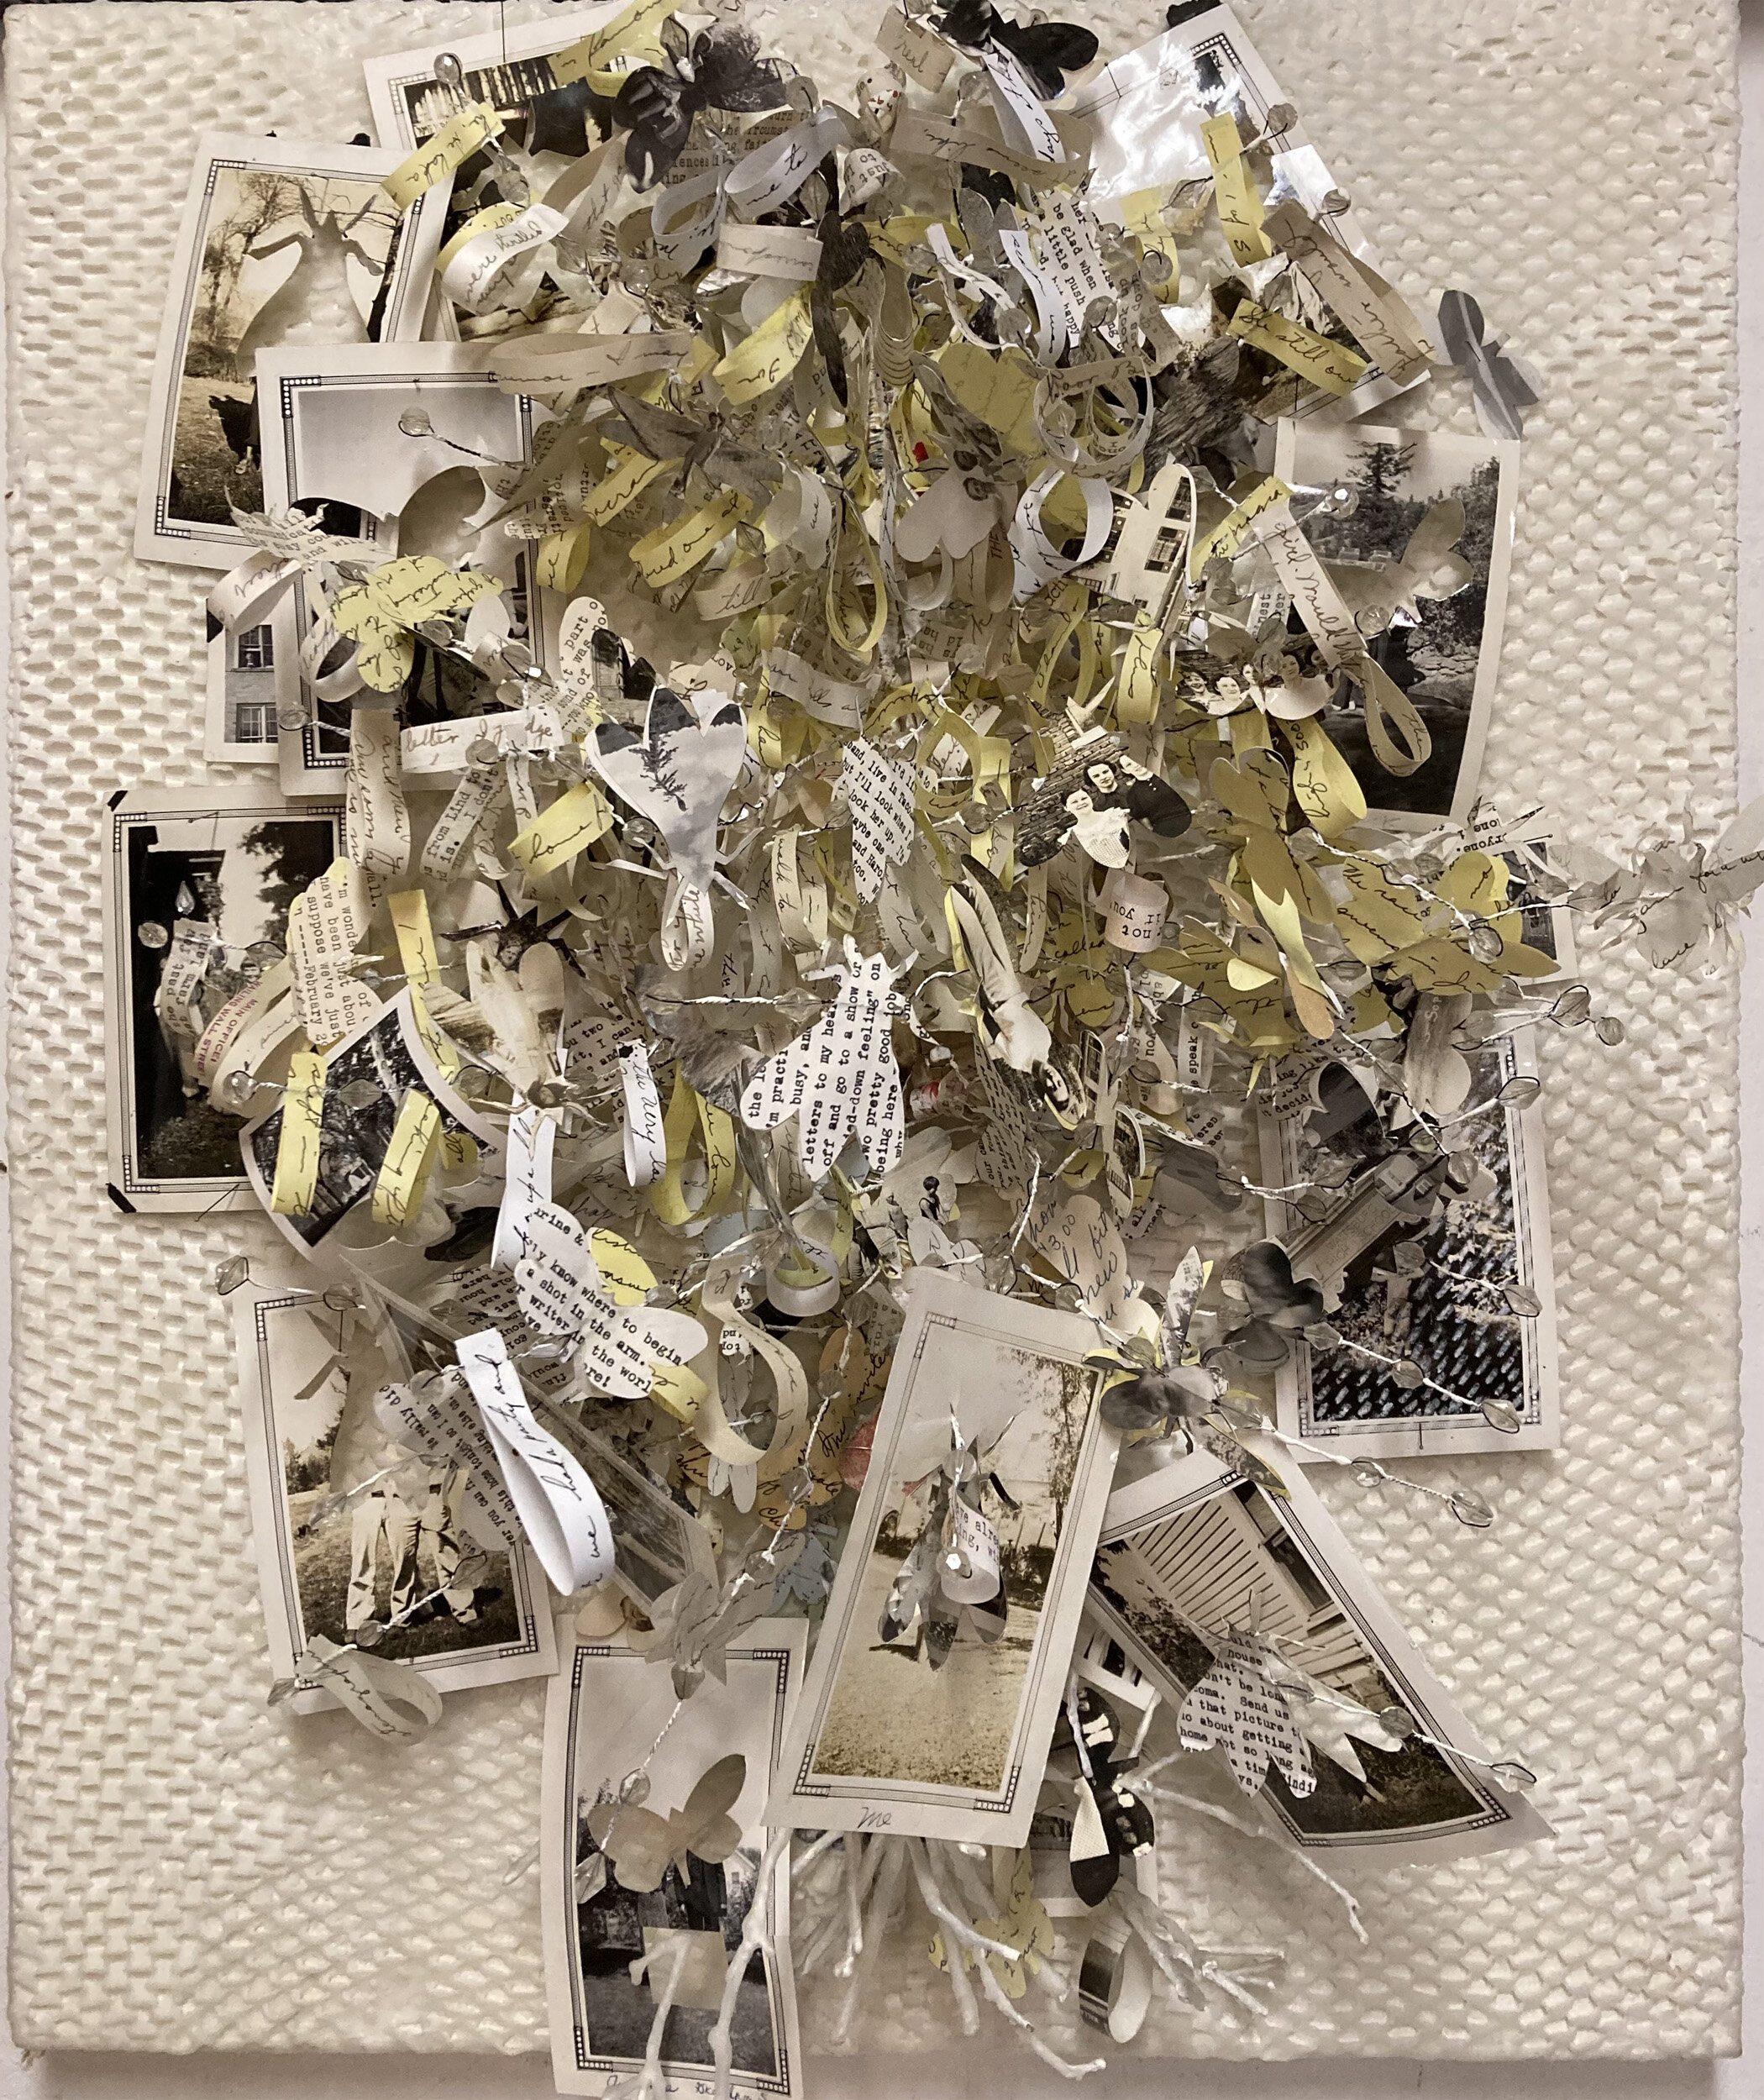 Joy Broom, Family Tree, 2016, Mixed media on canvas, 24 x 20"